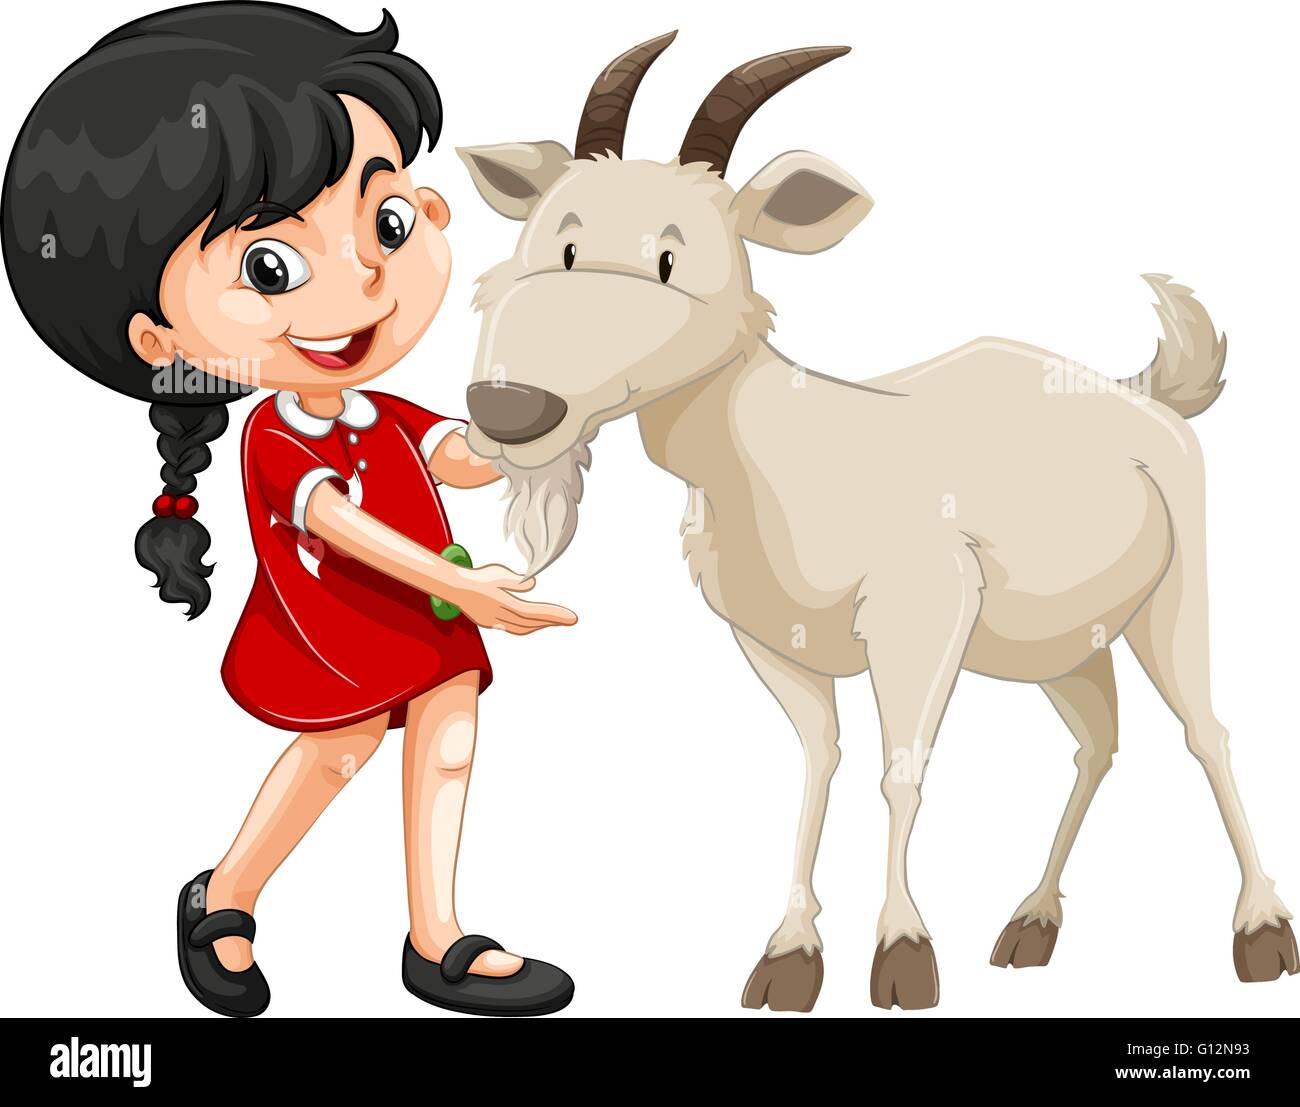 Little girl and white goat illustration Stock Vector Image & Art - Alamy